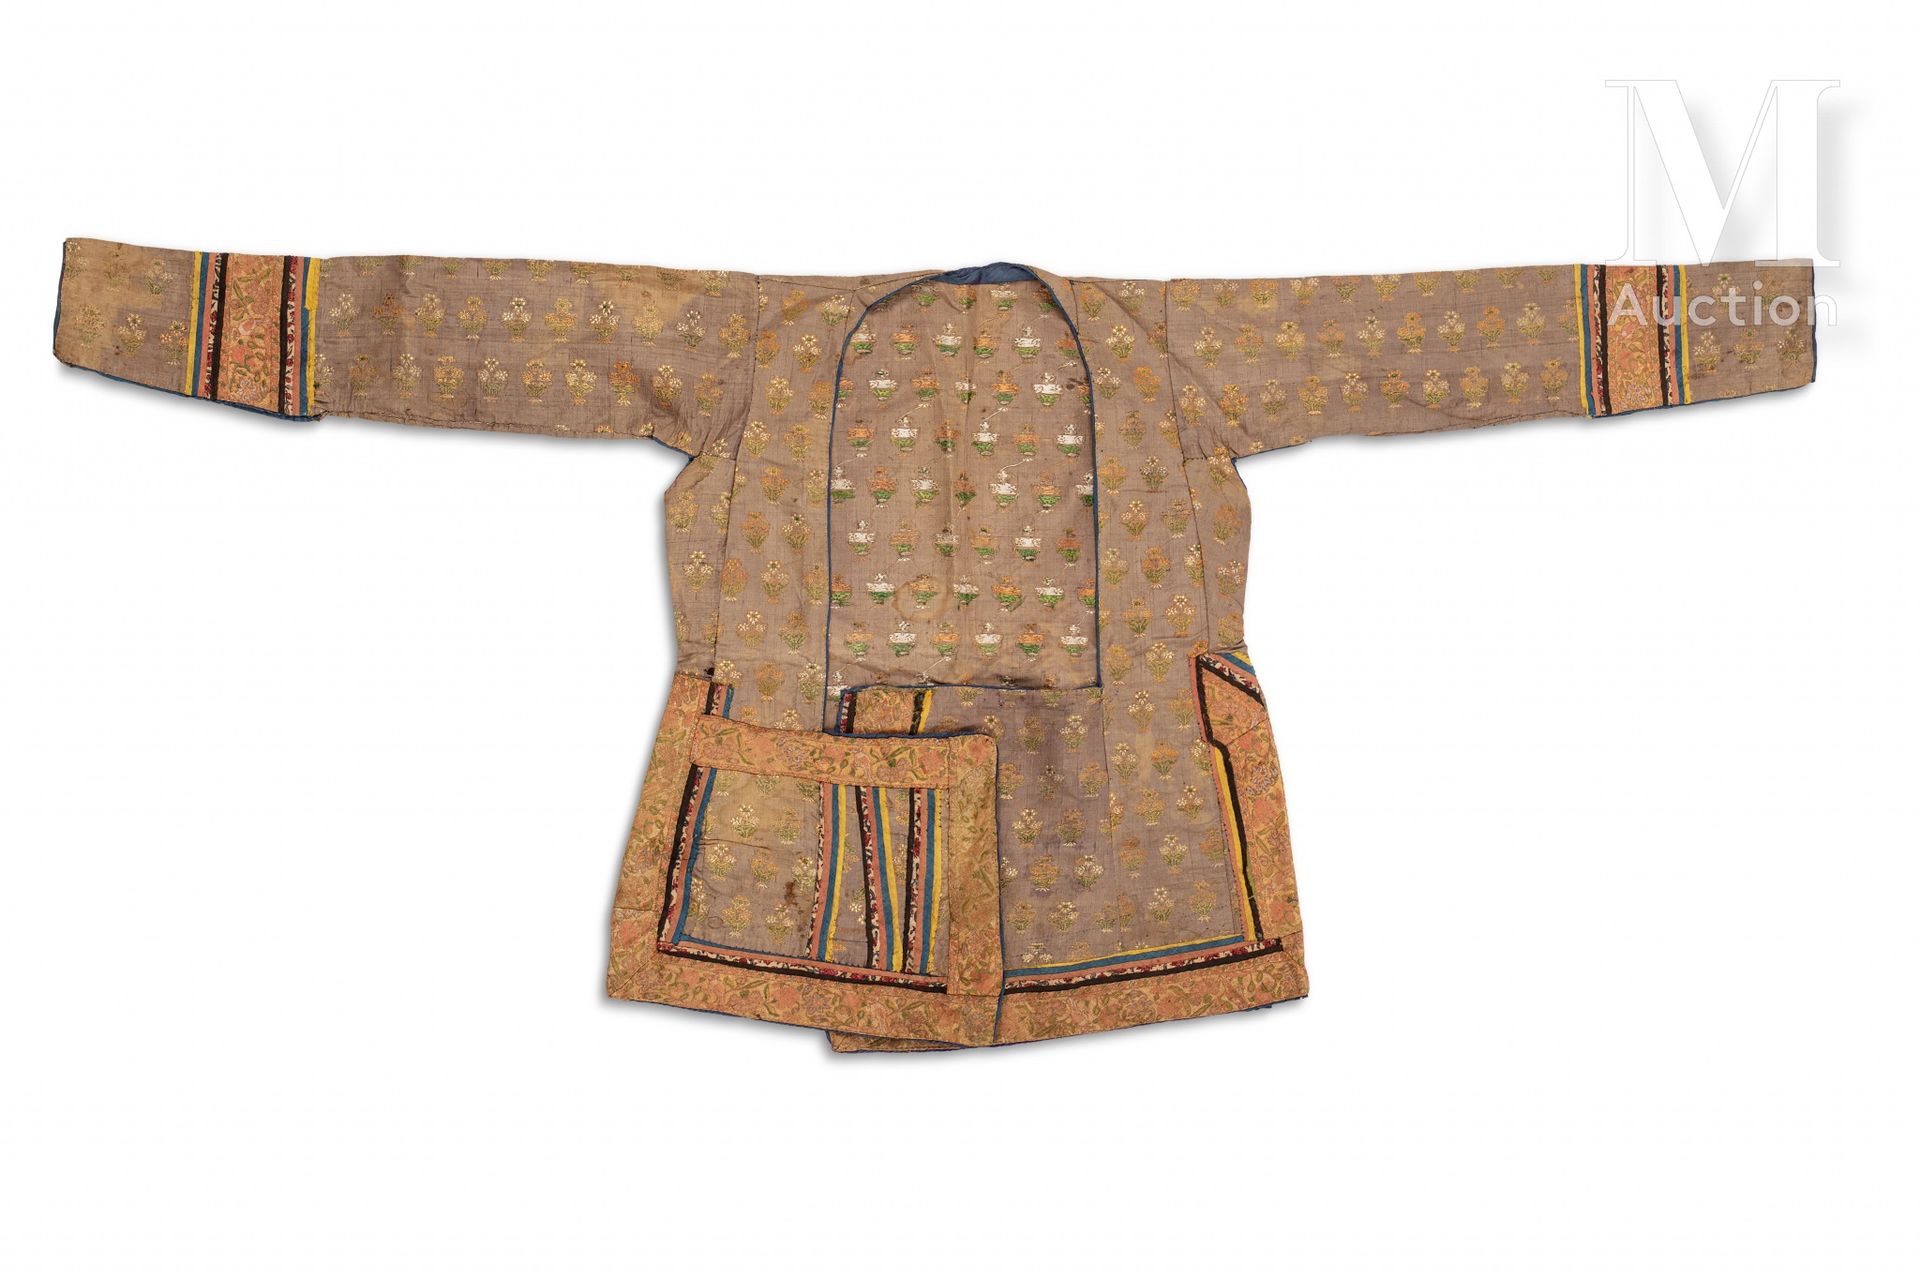 Veste safavide Iran, XVIIIe siècle

Vêtement cintré à manche trois-quarts en soi&hellip;